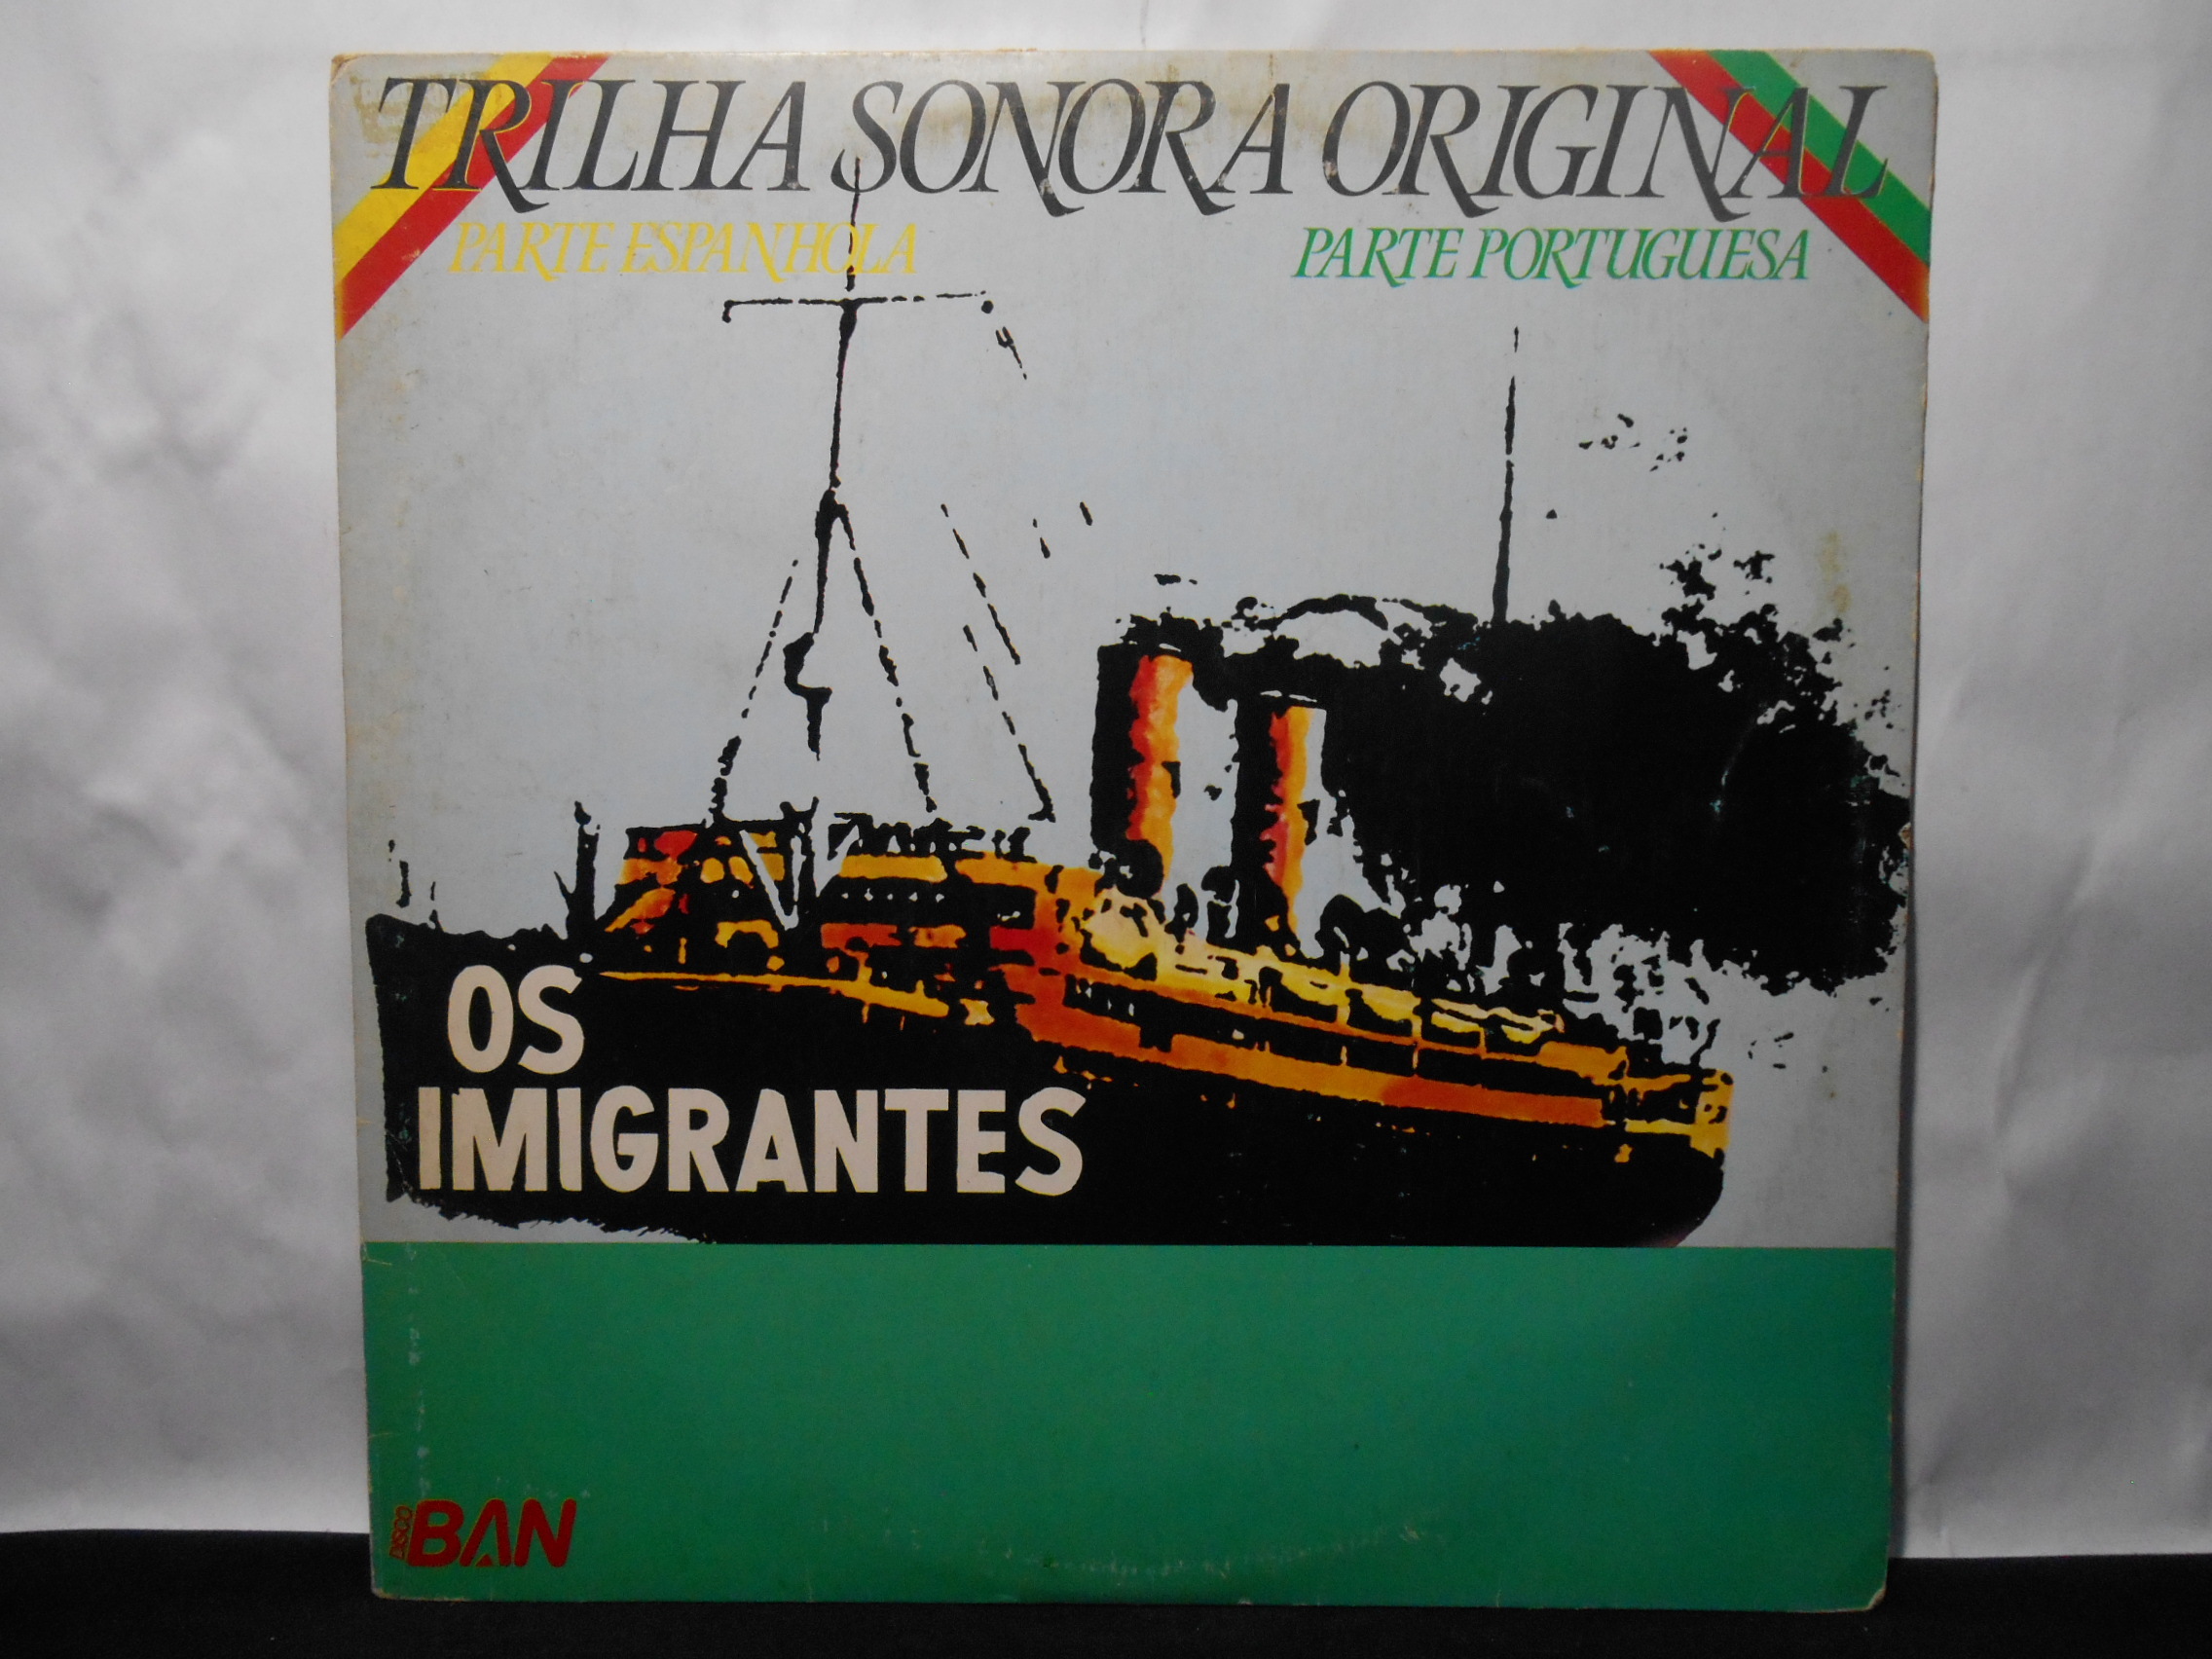 VINIL - Os Imigrantes - Trilha Sonora Original (Parte Espanhola e Porturguesa)